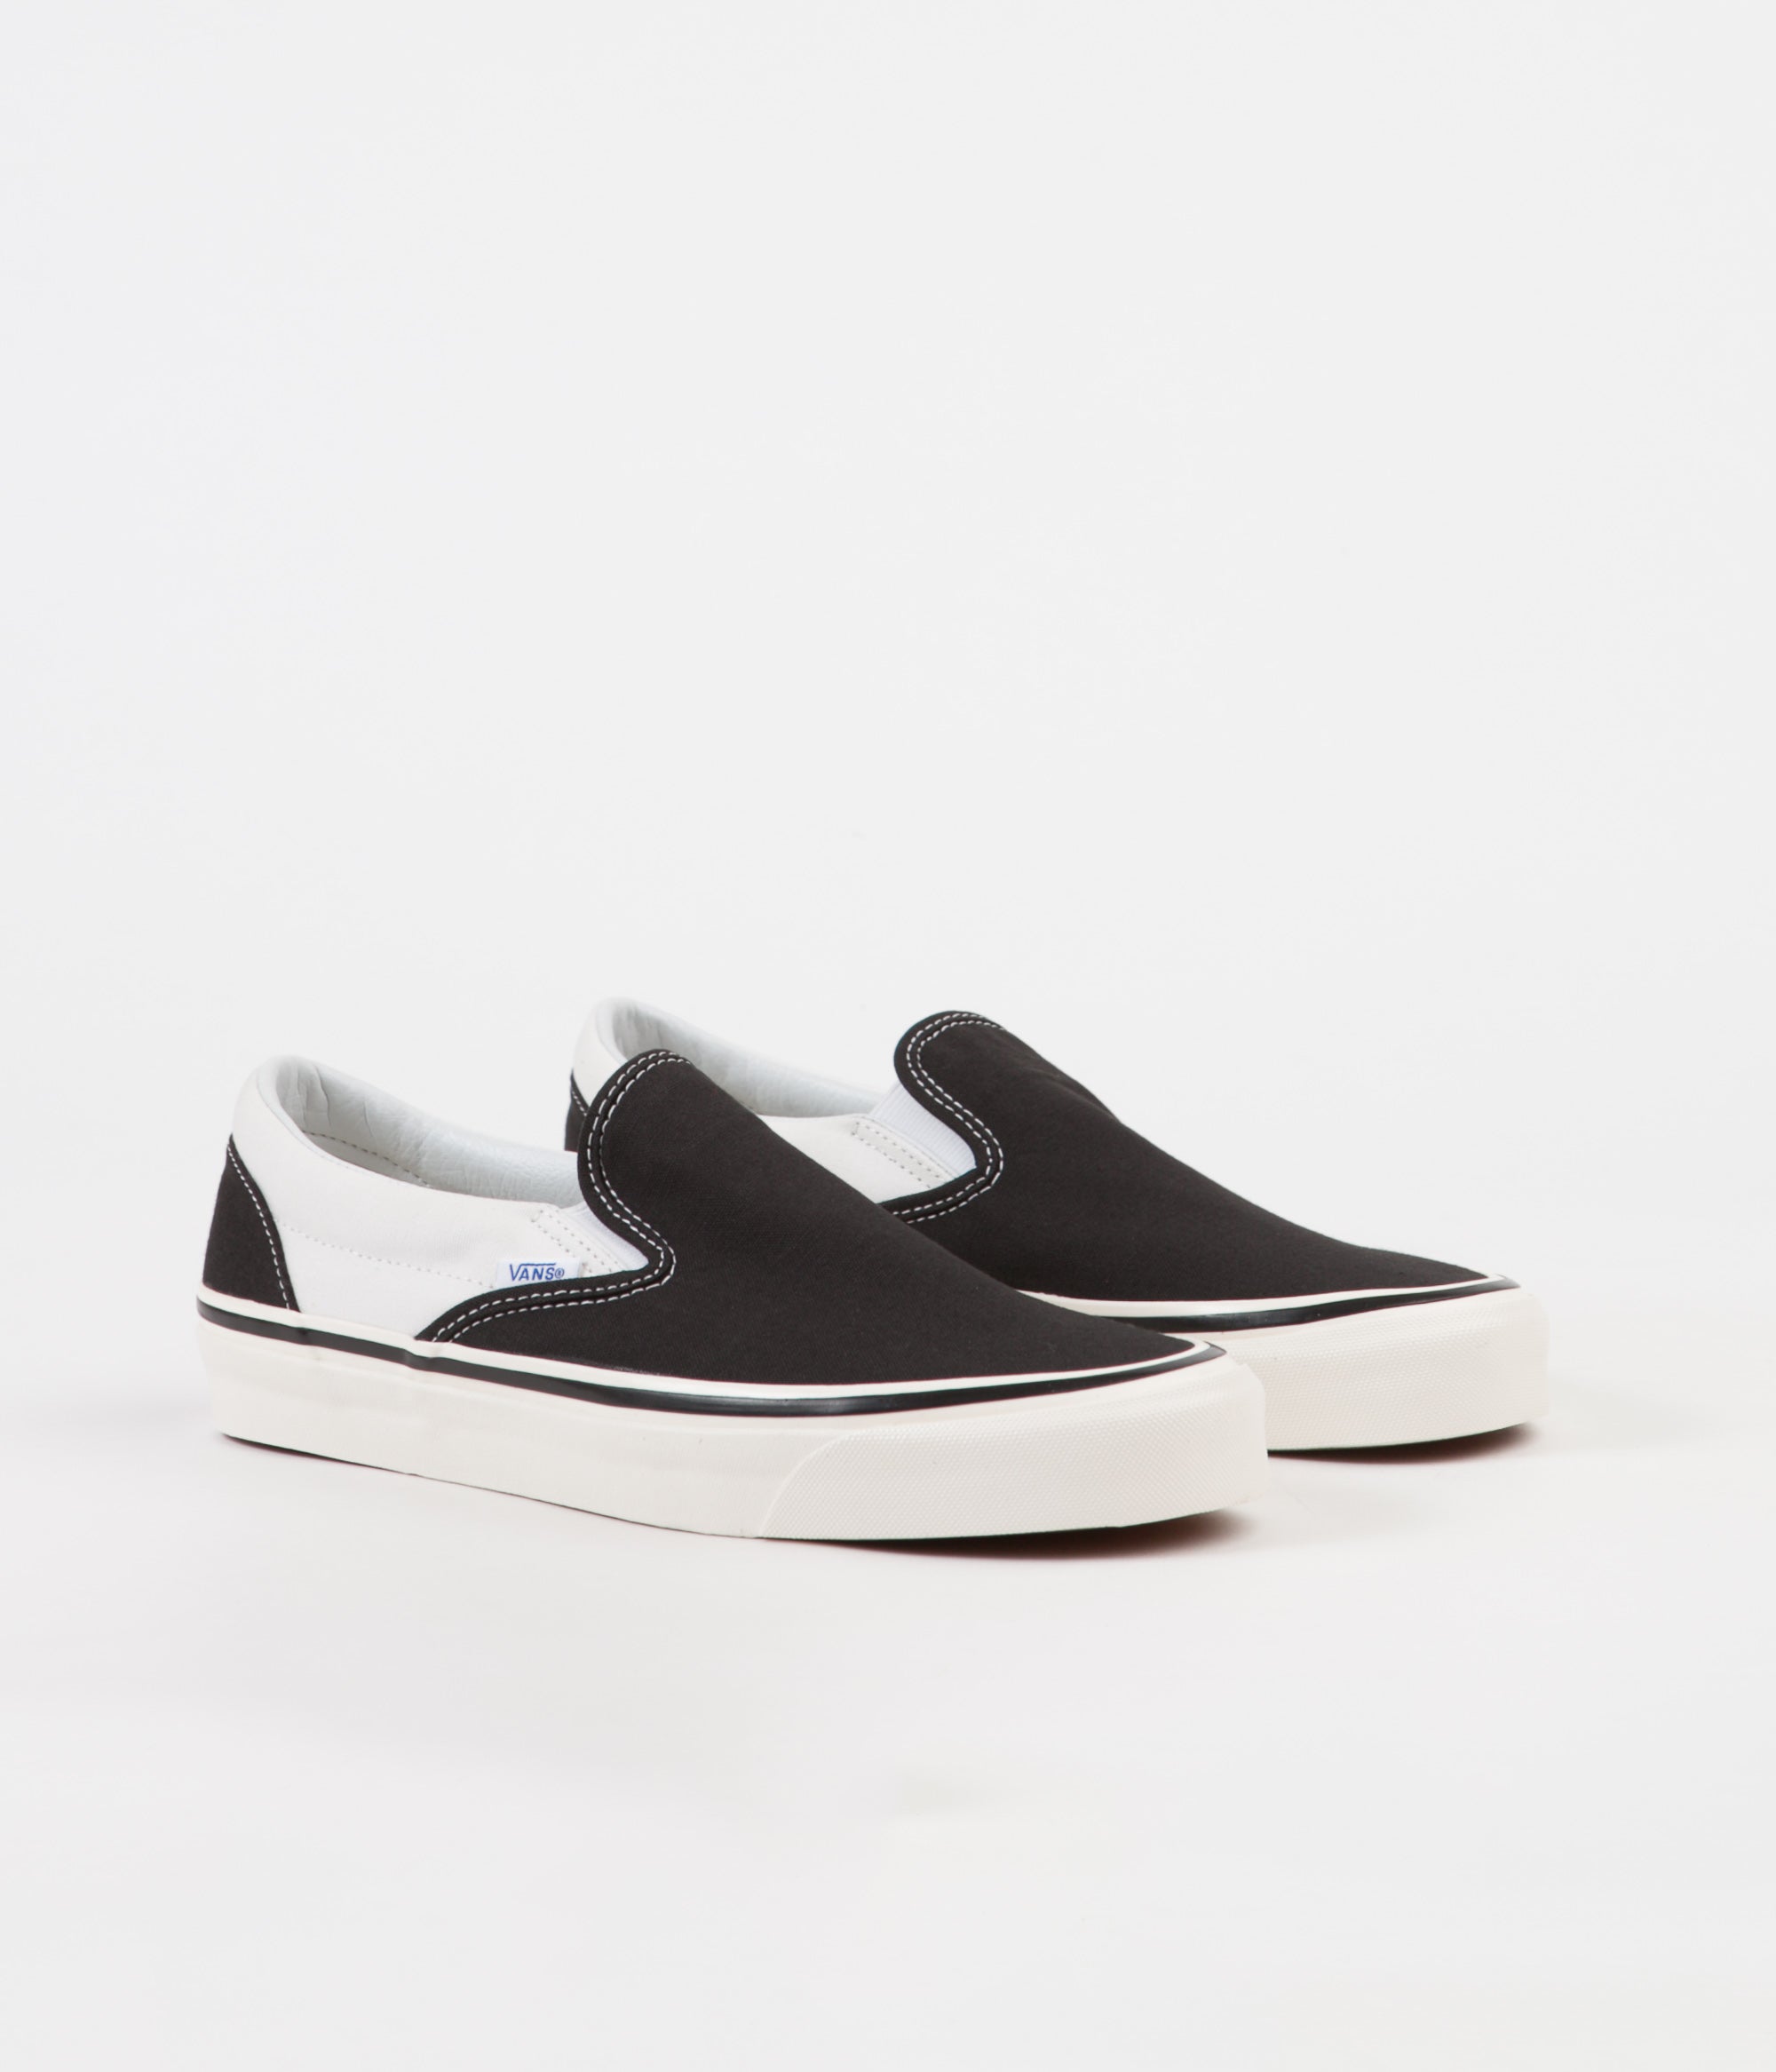 Vans Classic Slip-On 98 DX Anaheim Factory Shoes - Black / White | Flatspot